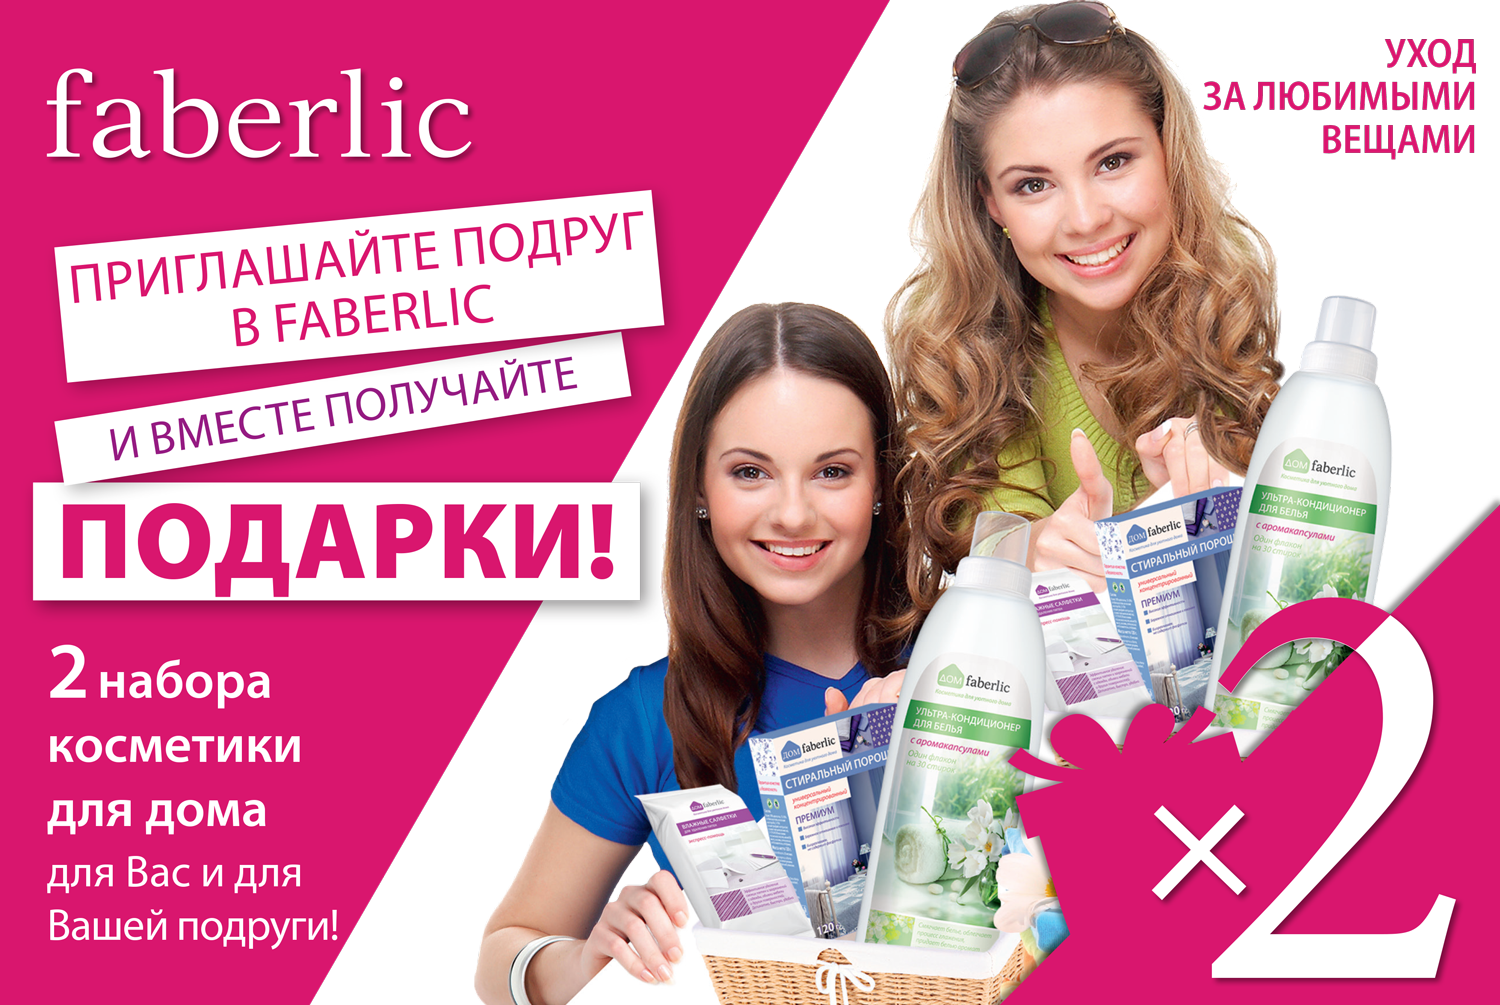 assortiment-faberlic, компания фаберлик, скидка 30% от фаберлик (assortiment-faberlic), бесплатная регистрация в Фаберлик (assortiment-faberlic).faberlic@faberlic